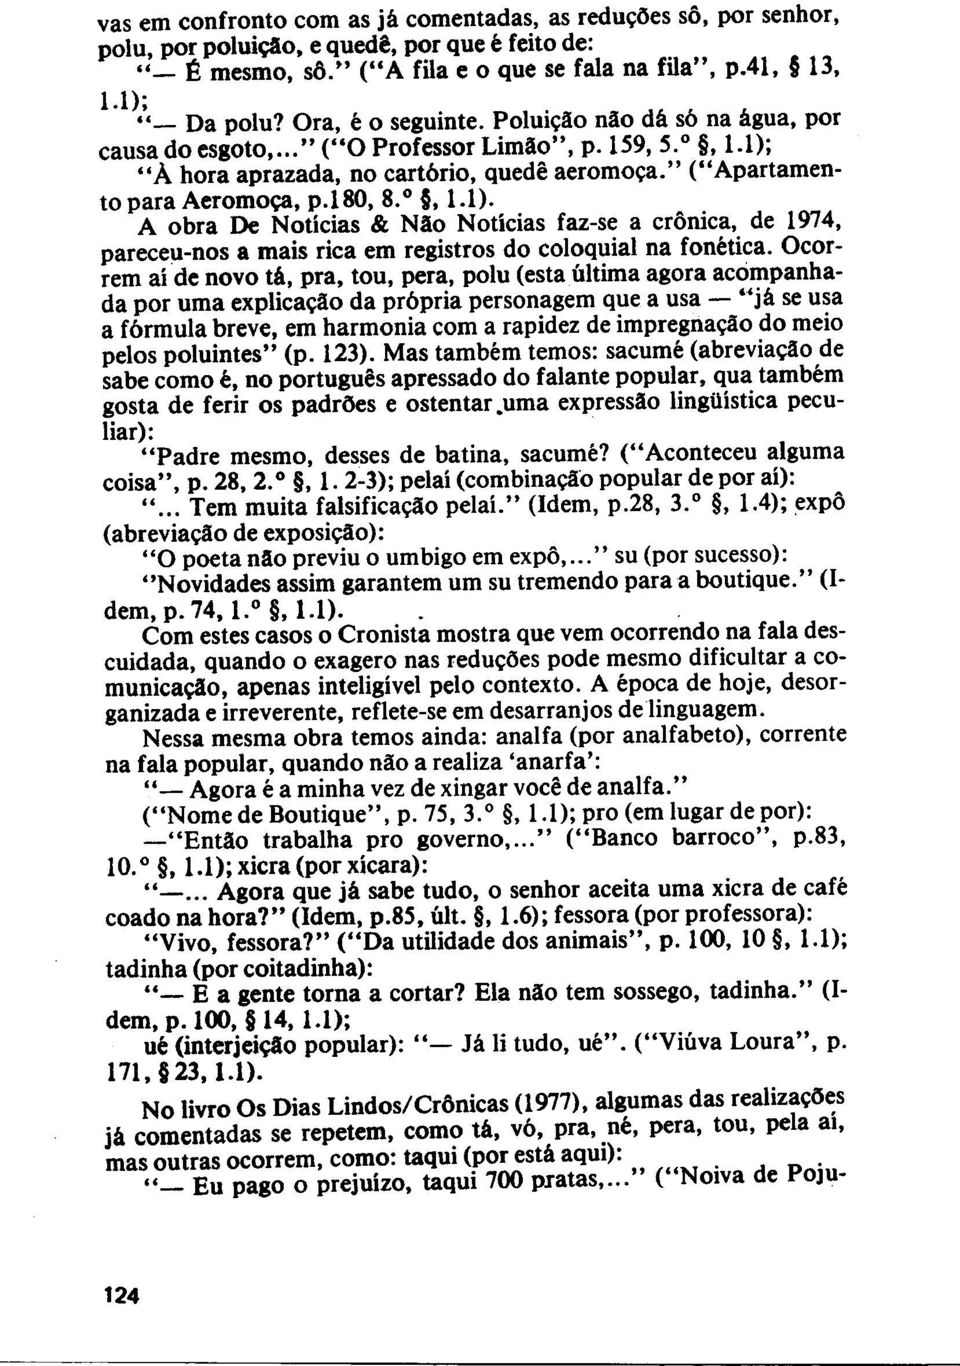 l80, 8. 0, 1.1). A obra De Noticias & NAo Noticias faz-se a cronica, de 1974, pareceu-nos a mais rica em registros do coloquial na fonetica.